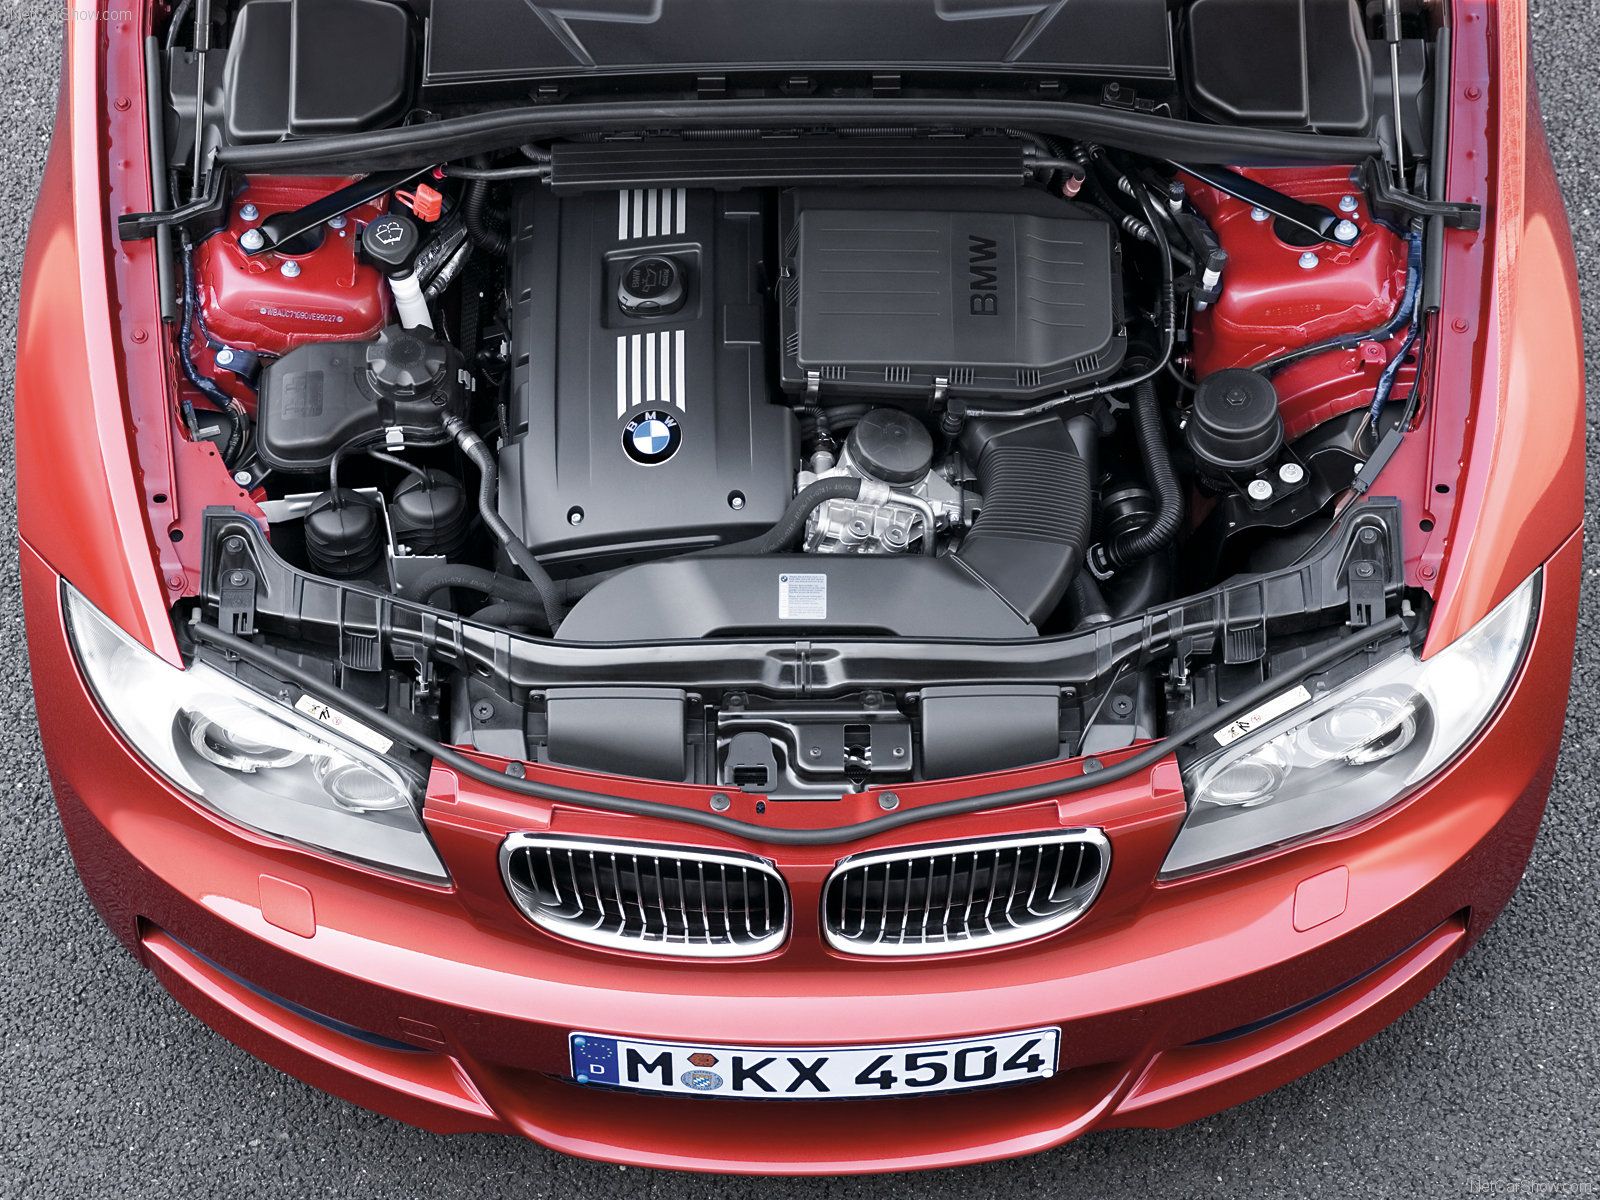 BMW 135i, engine